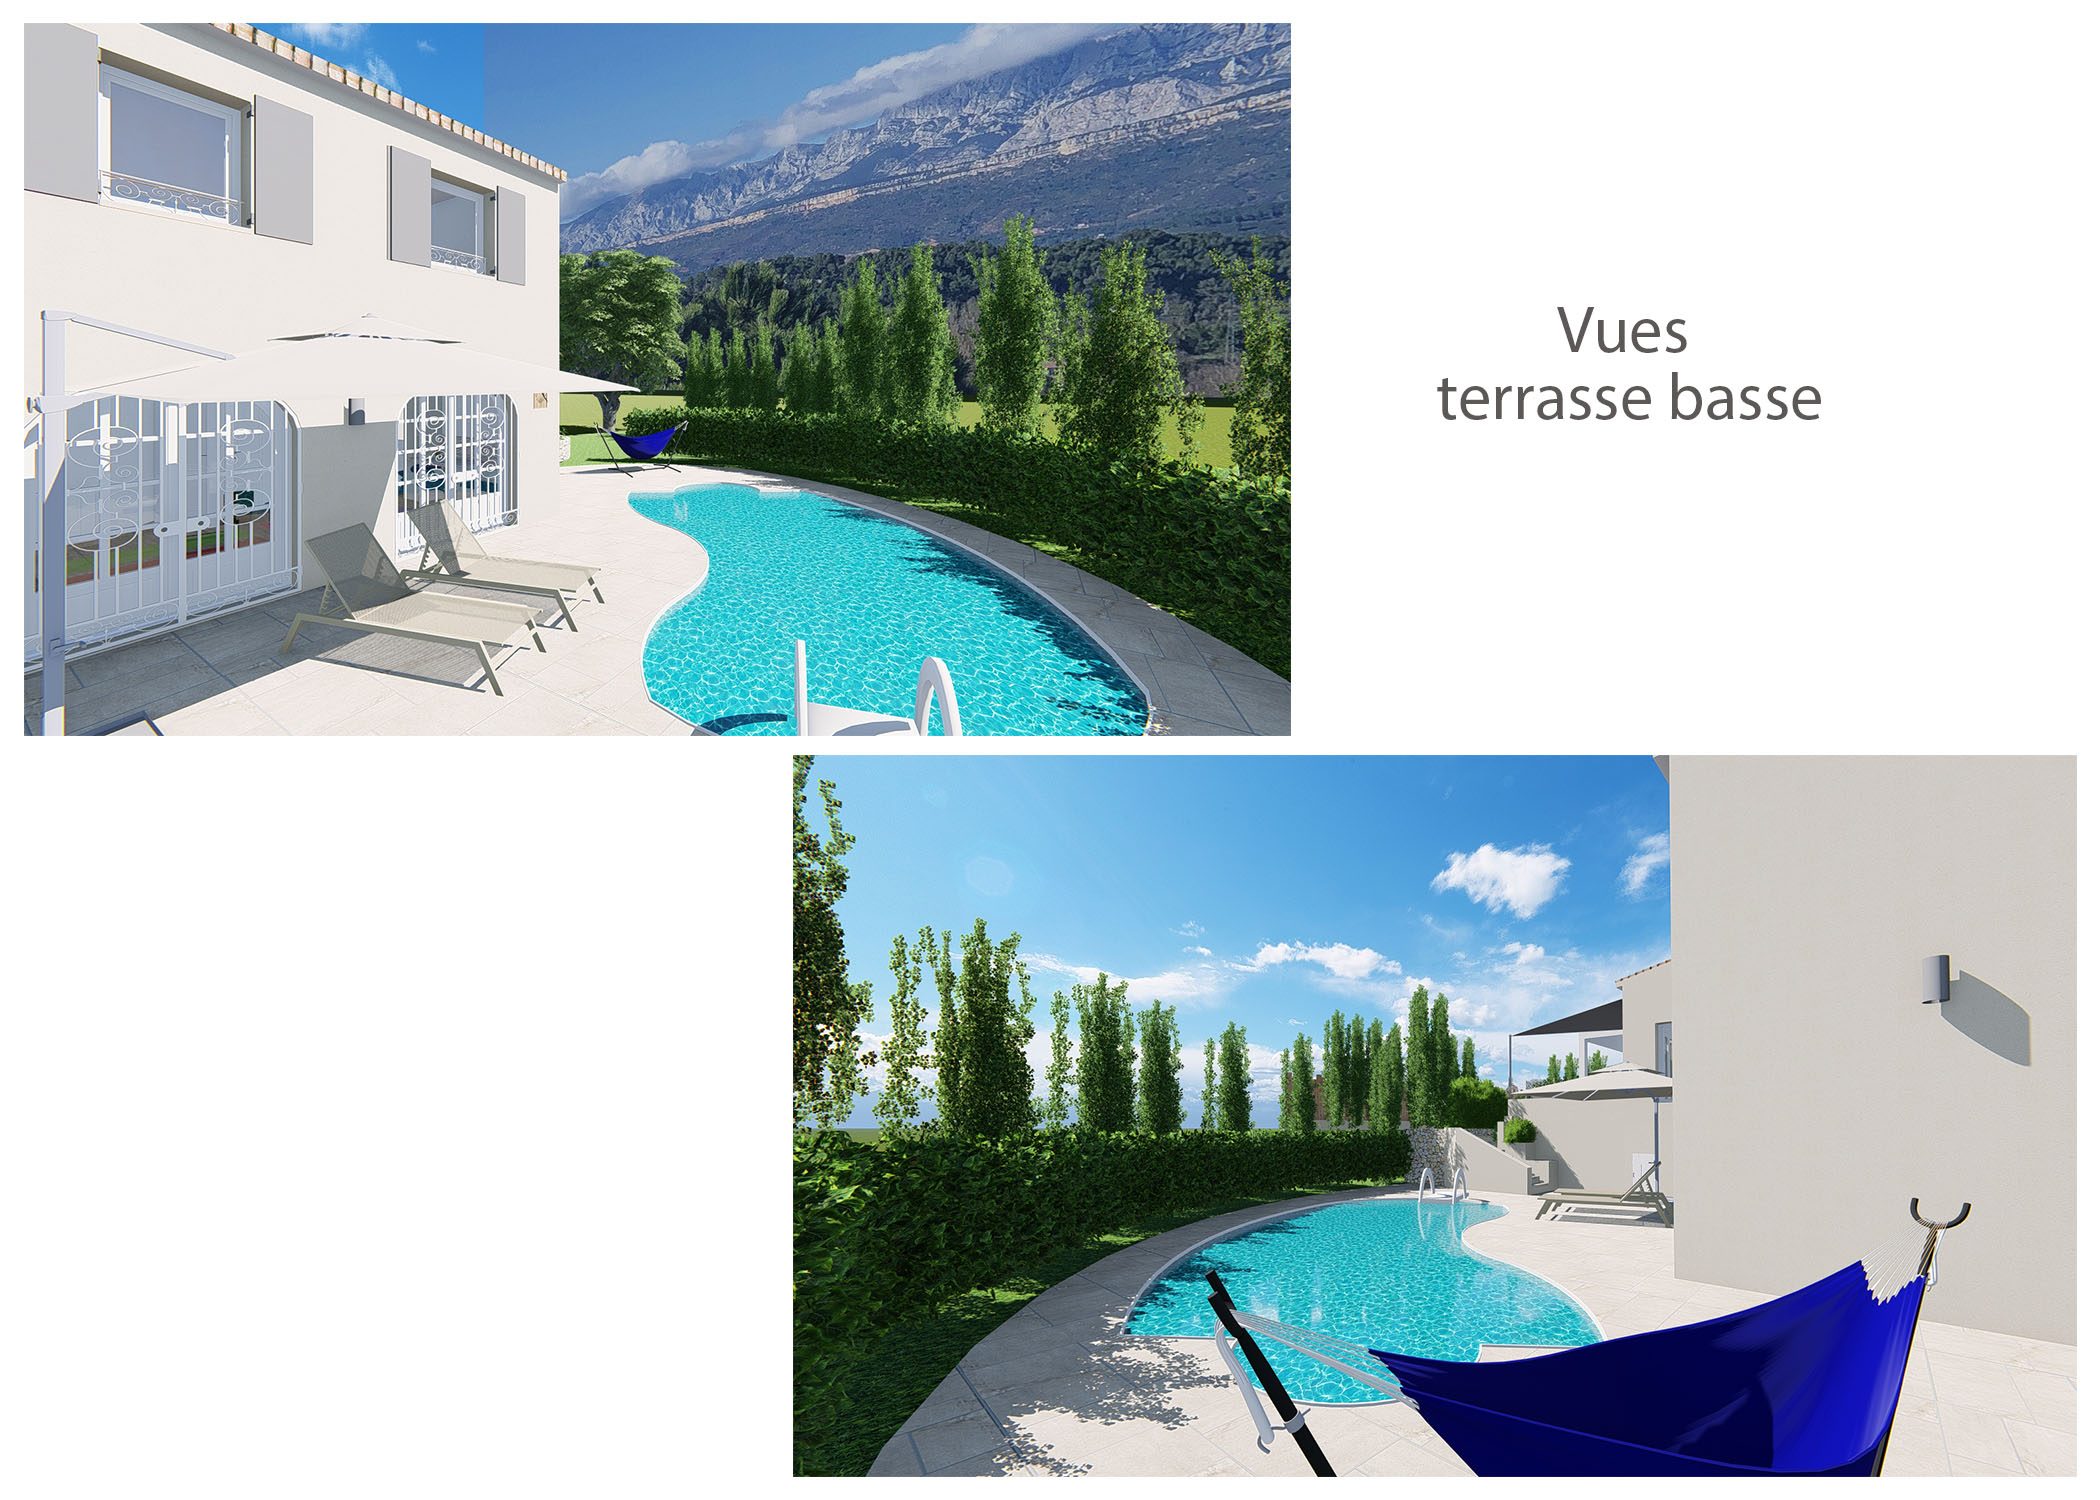 agencement-decoration-maison chateauneuf-le-rouge-vues terrasse basse-dekho design